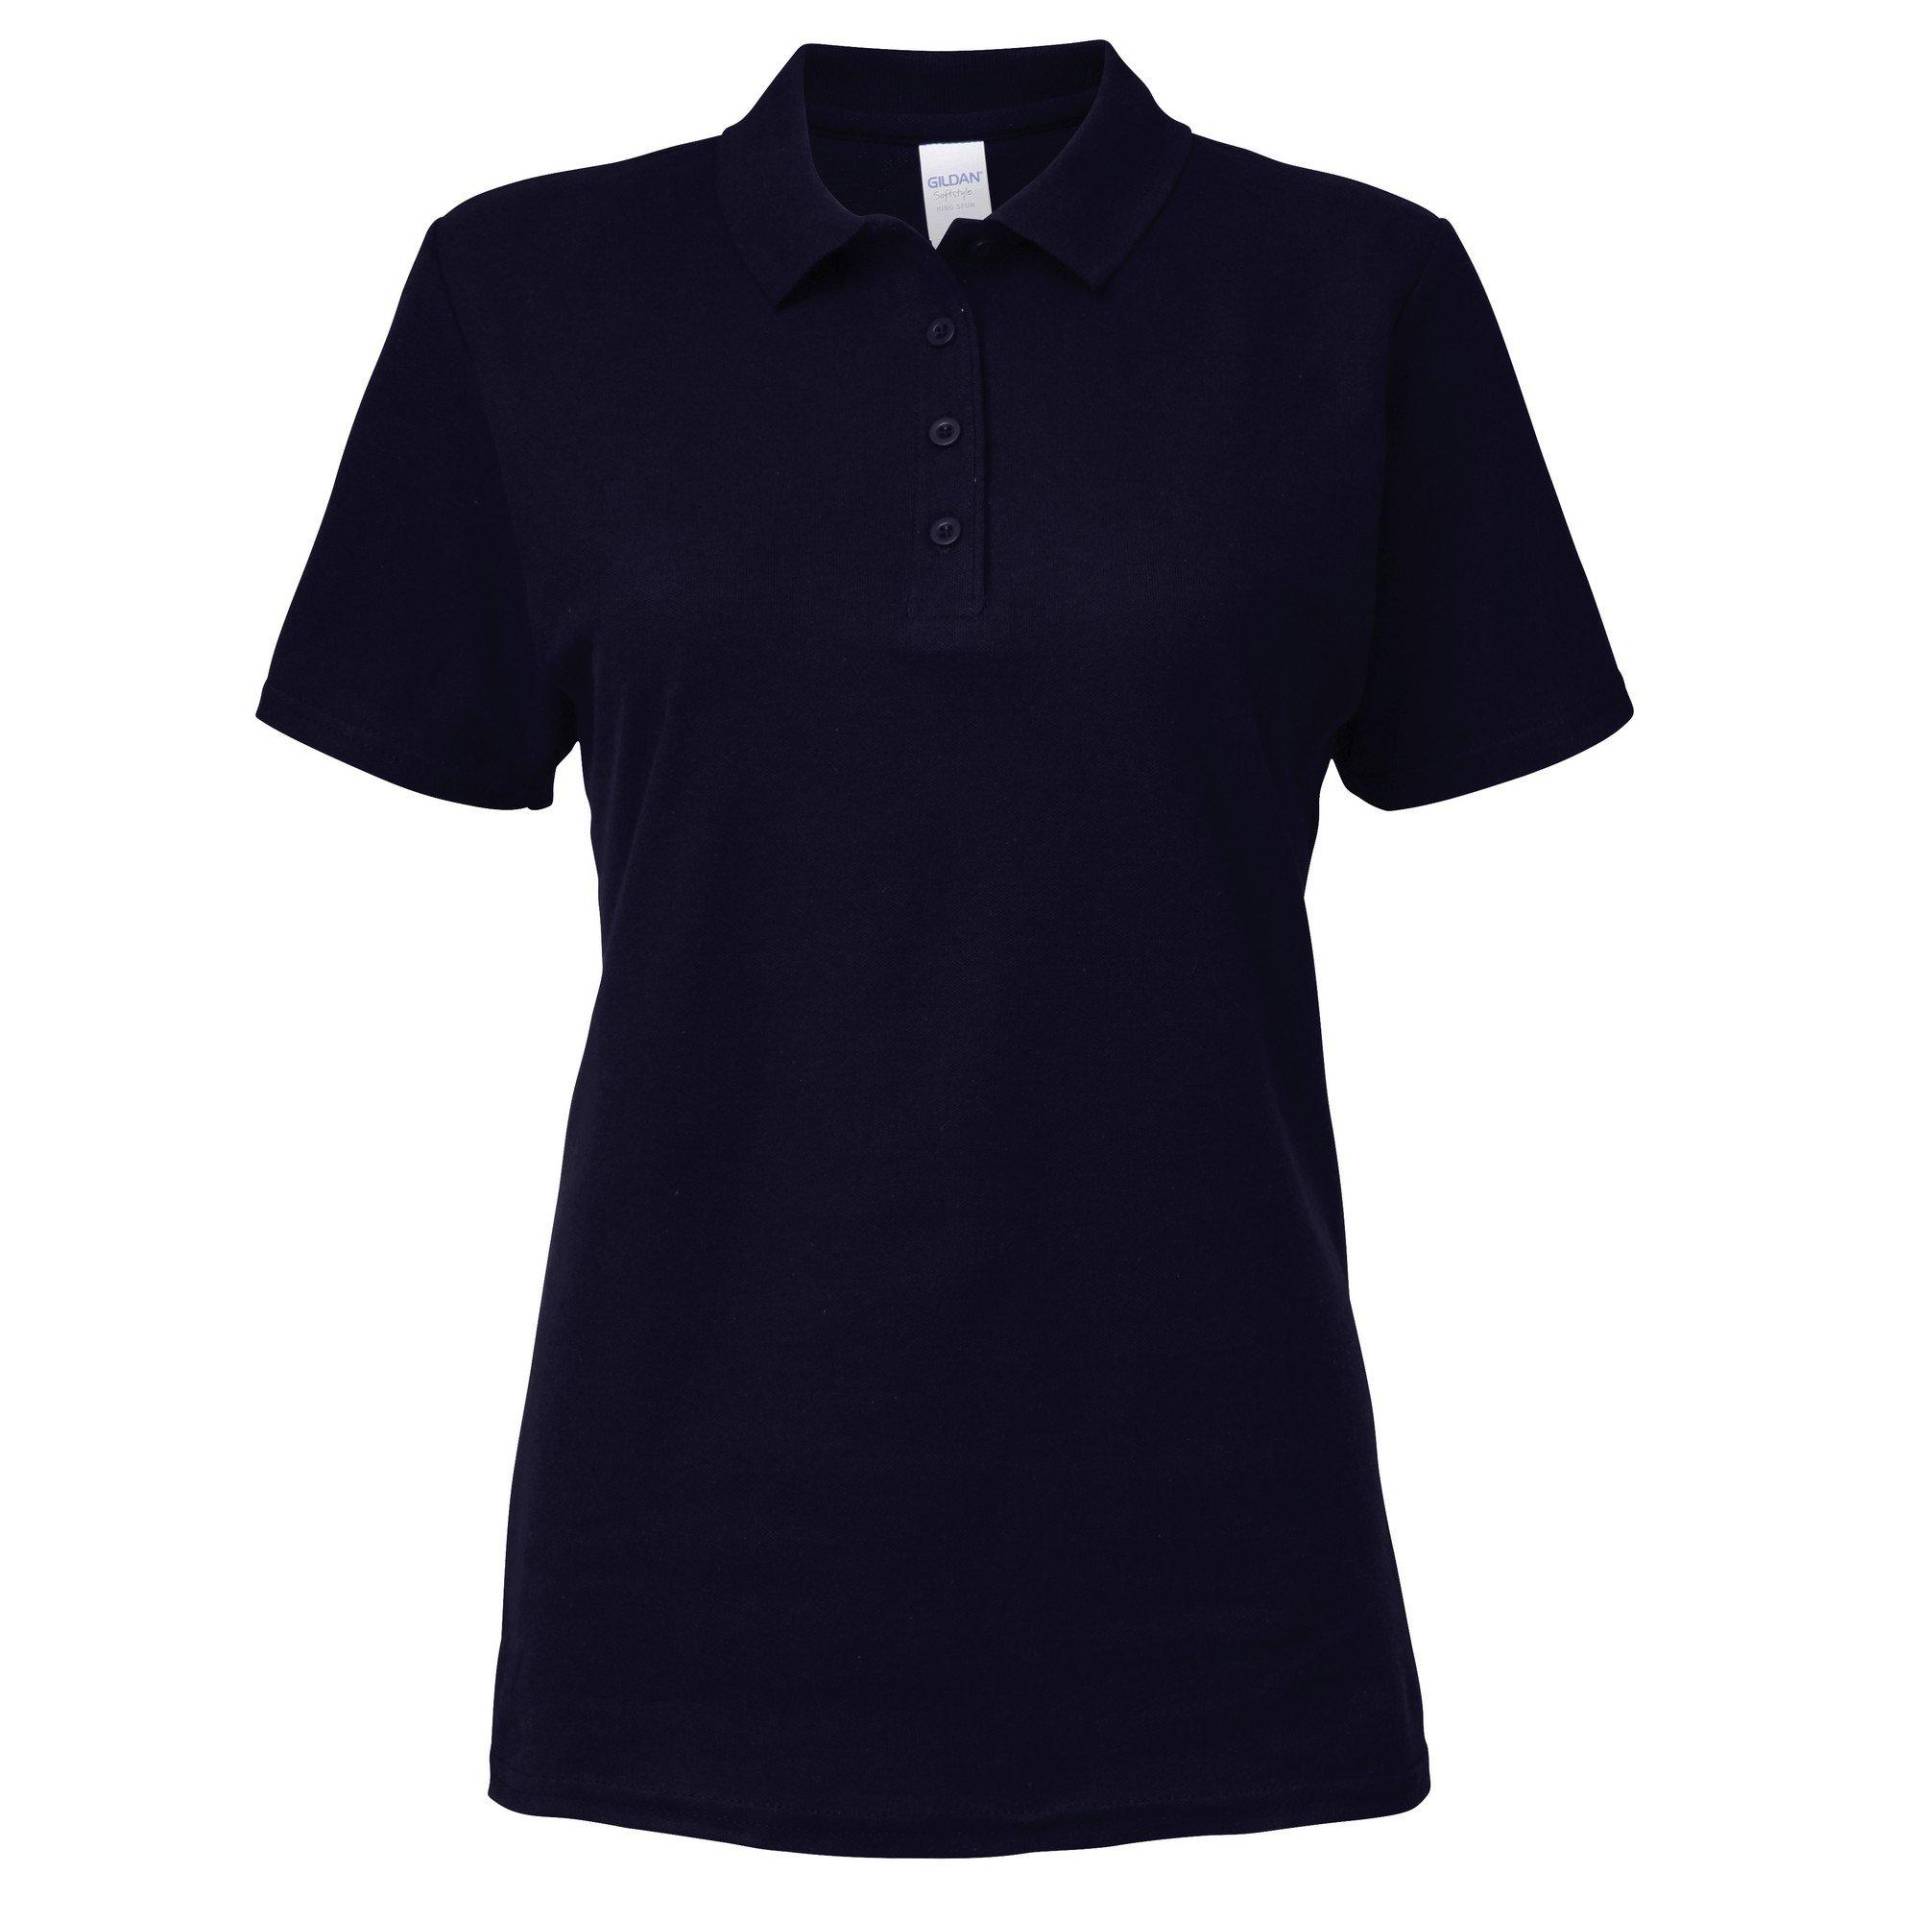 Softstyle Kurzarm Doppel Pique Polo Shirt Damen Marine S von Gildan